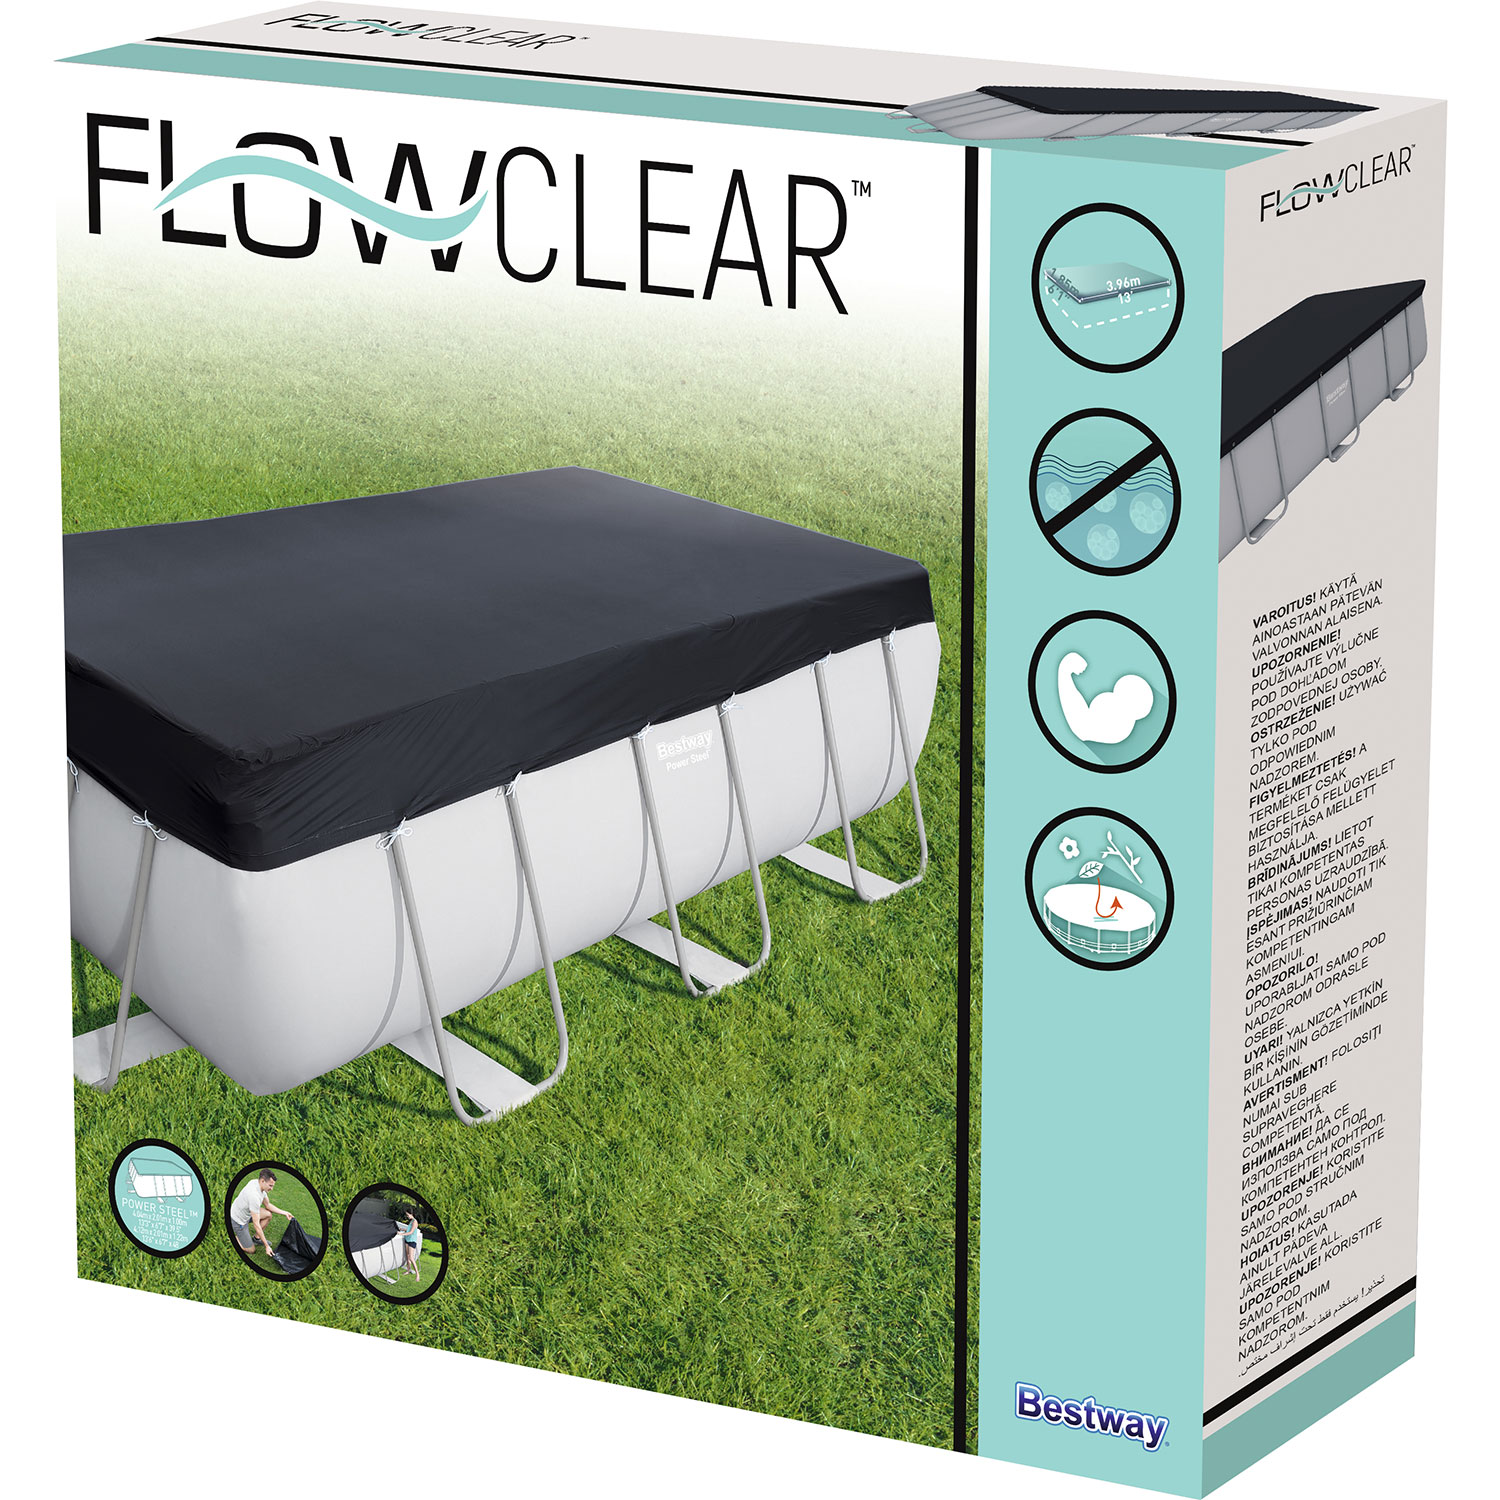 Bestway Flowclear pool cover 404 cm